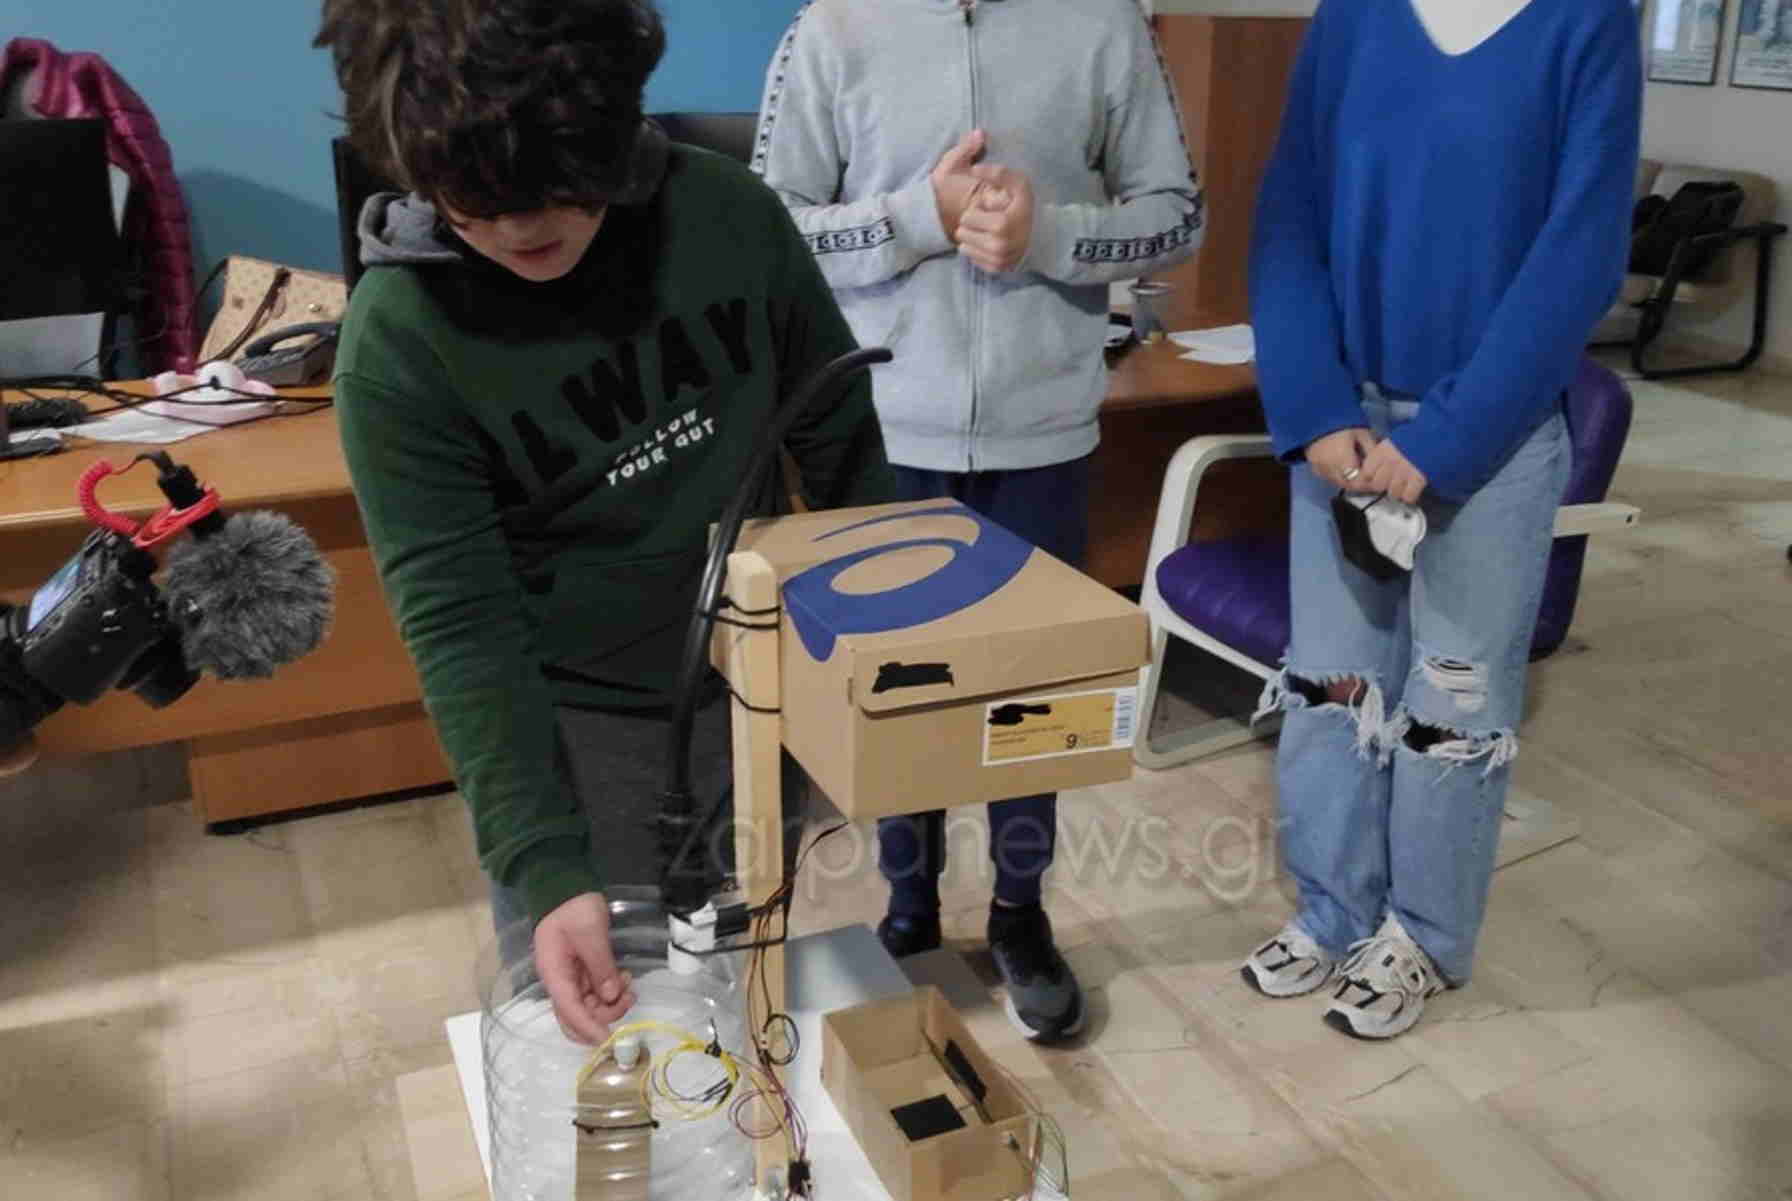 Χανιά: Βραβεύονται μαθητές που δημιούργησαν αυτόματο σύστημα για τάισμα και πότισμα αδέσποτων